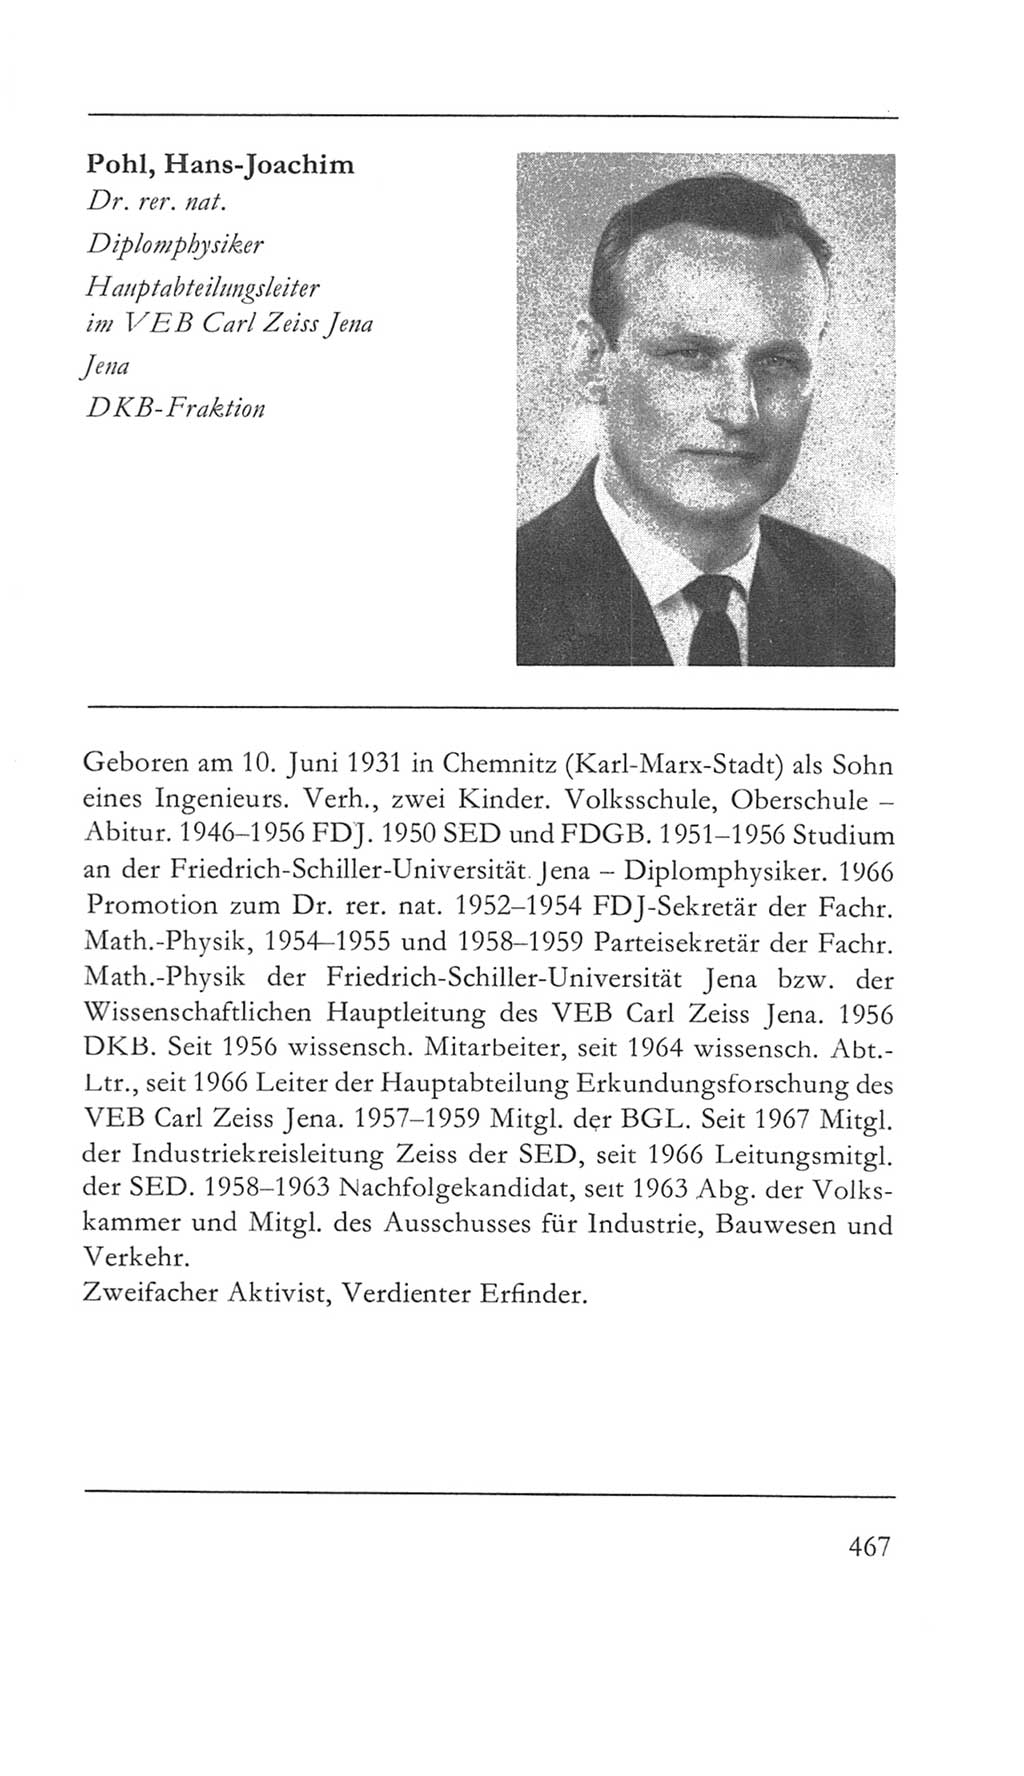 Volkskammer (VK) der Deutschen Demokratischen Republik (DDR) 5. Wahlperiode 1967-1971, Seite 467 (VK. DDR 5. WP. 1967-1971, S. 467)